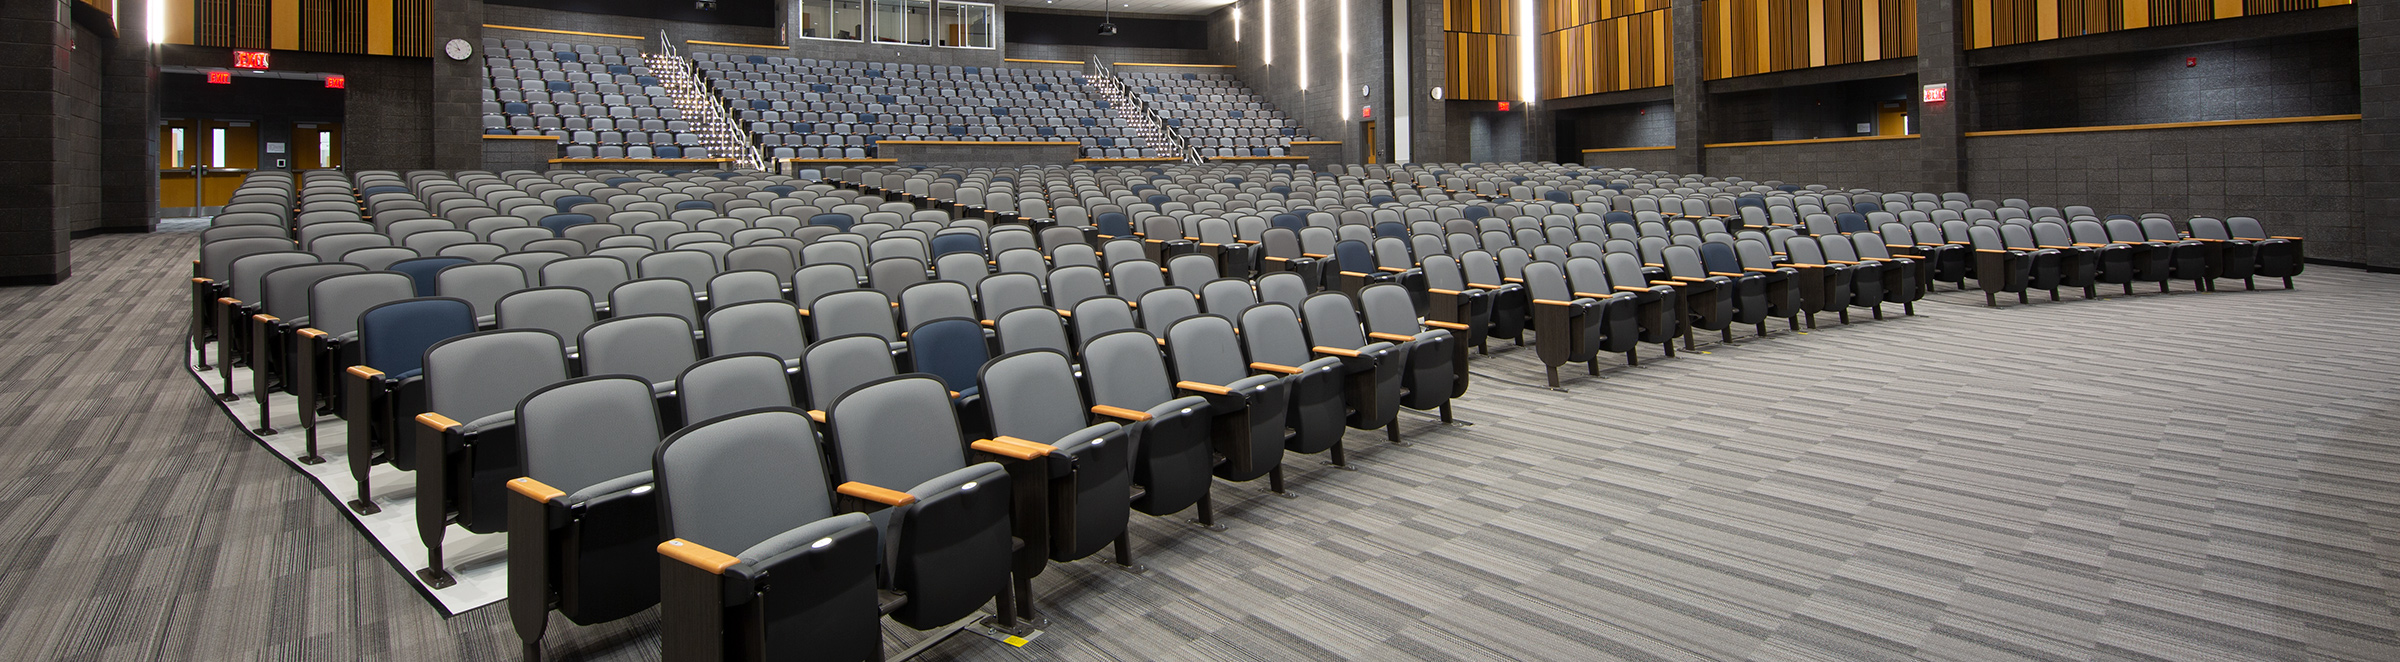 Lightridge High School fixed auditorium seating